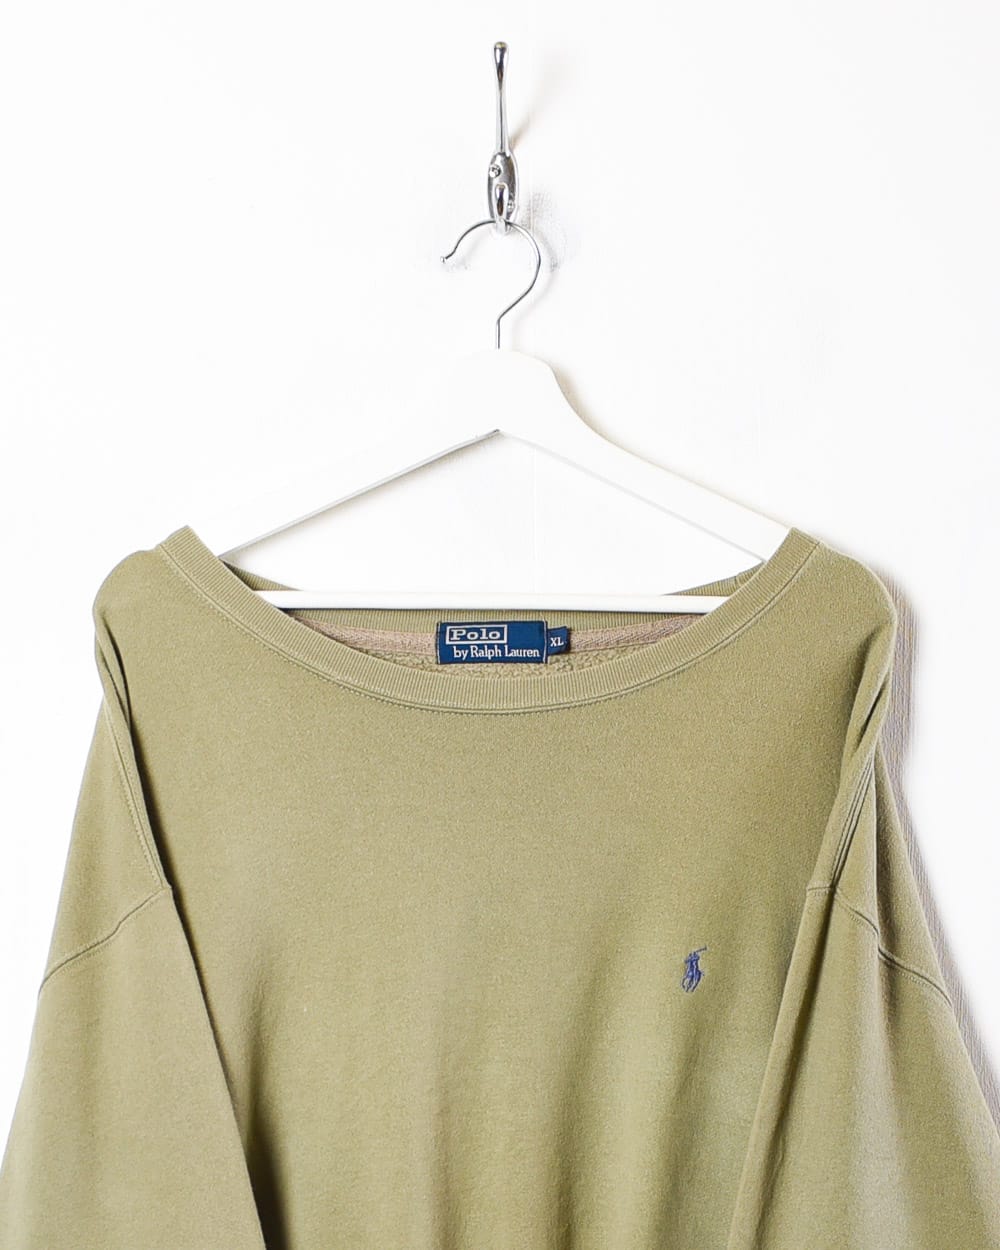 Grey Ralph Lauren Sweatshirt - X-Large